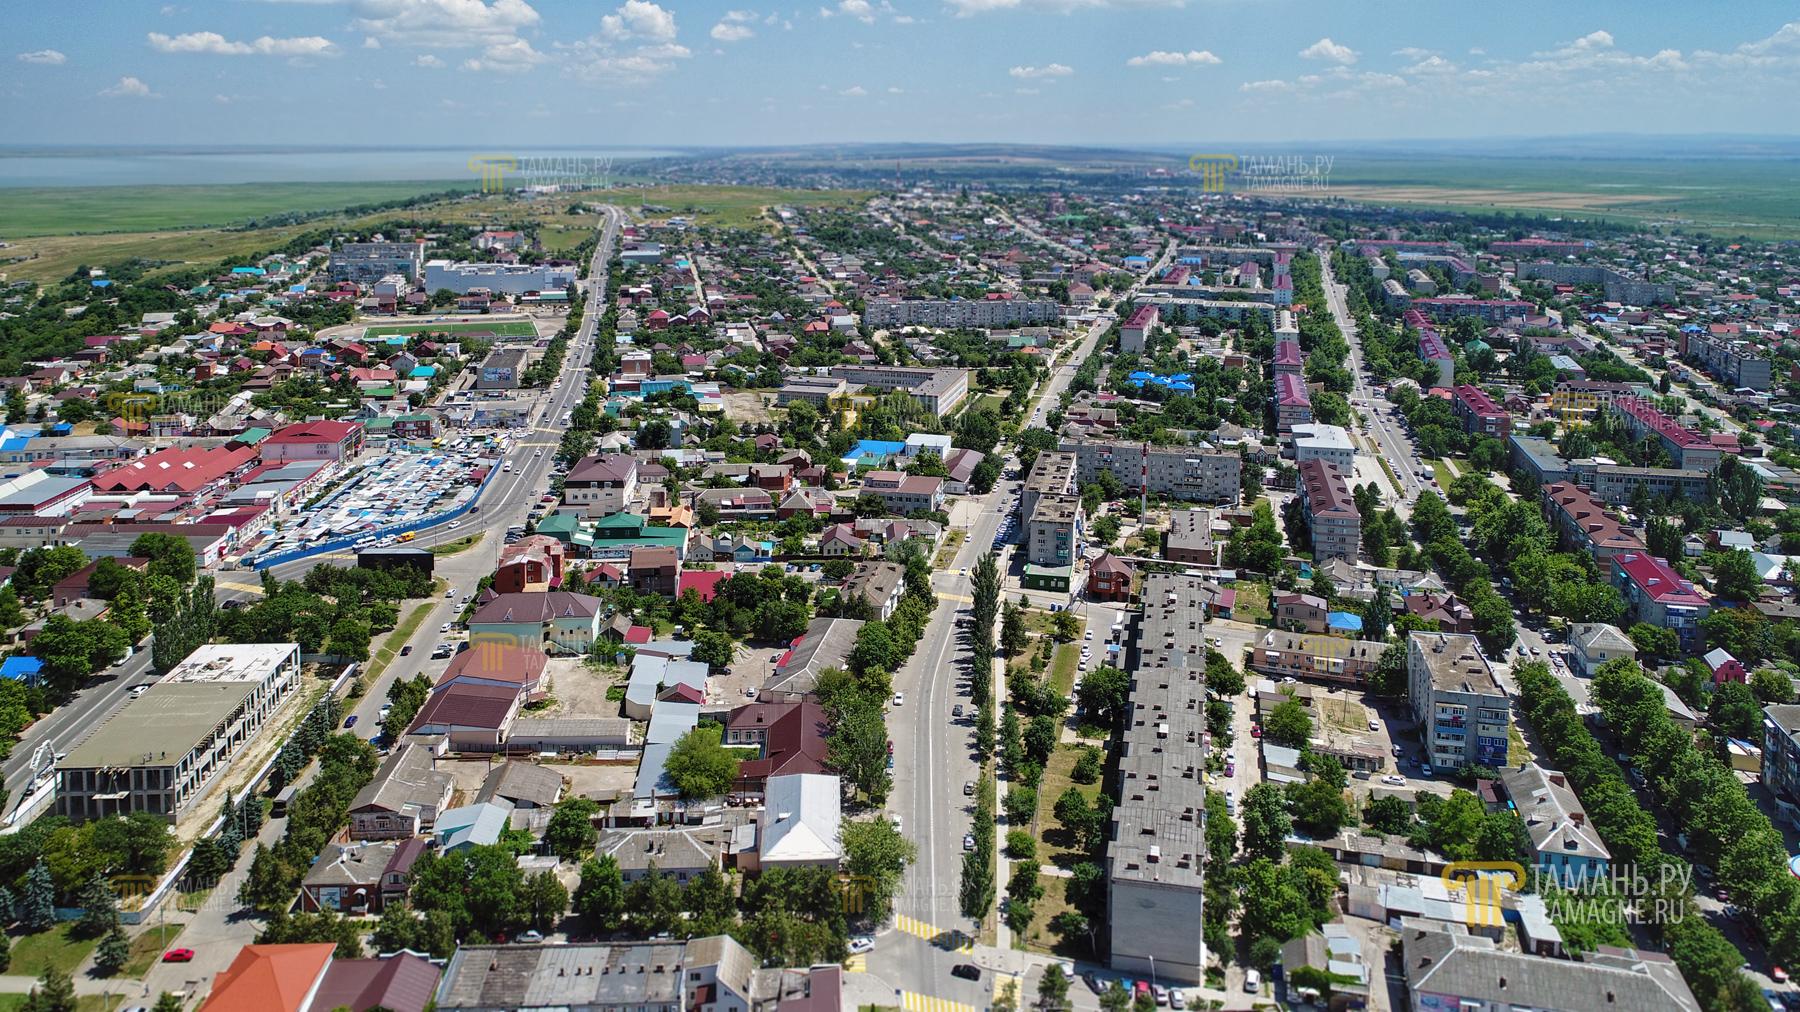 Темрюк – город в Краснодарском крае – является самым крупным населенным пунктом на Таманском полуострове